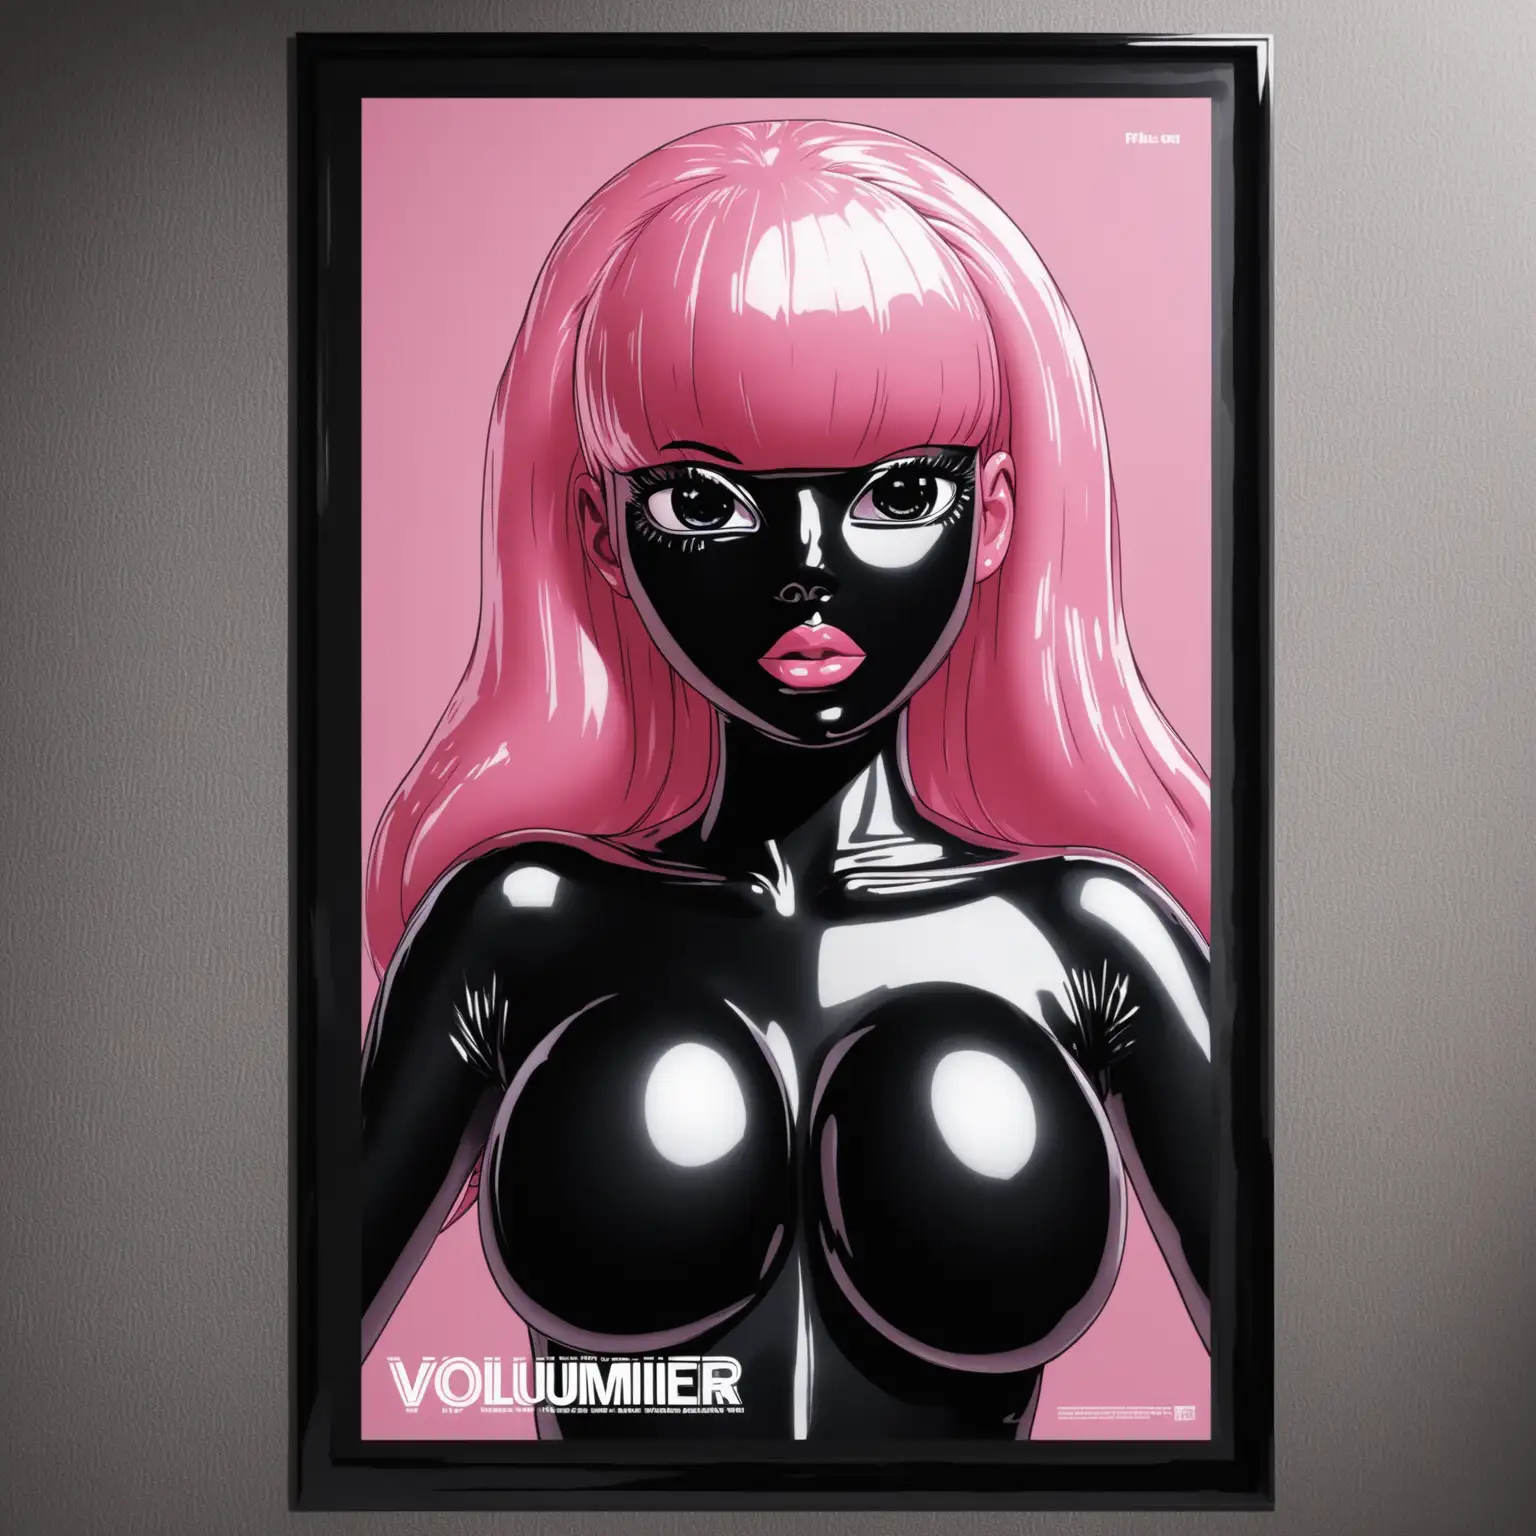 Плоский плакат висит на стене на котором изображена латексная девушка с черной латексной кожей с розовыми резиновыми волосами и черным латексным лицом. У плаката объемная грудь